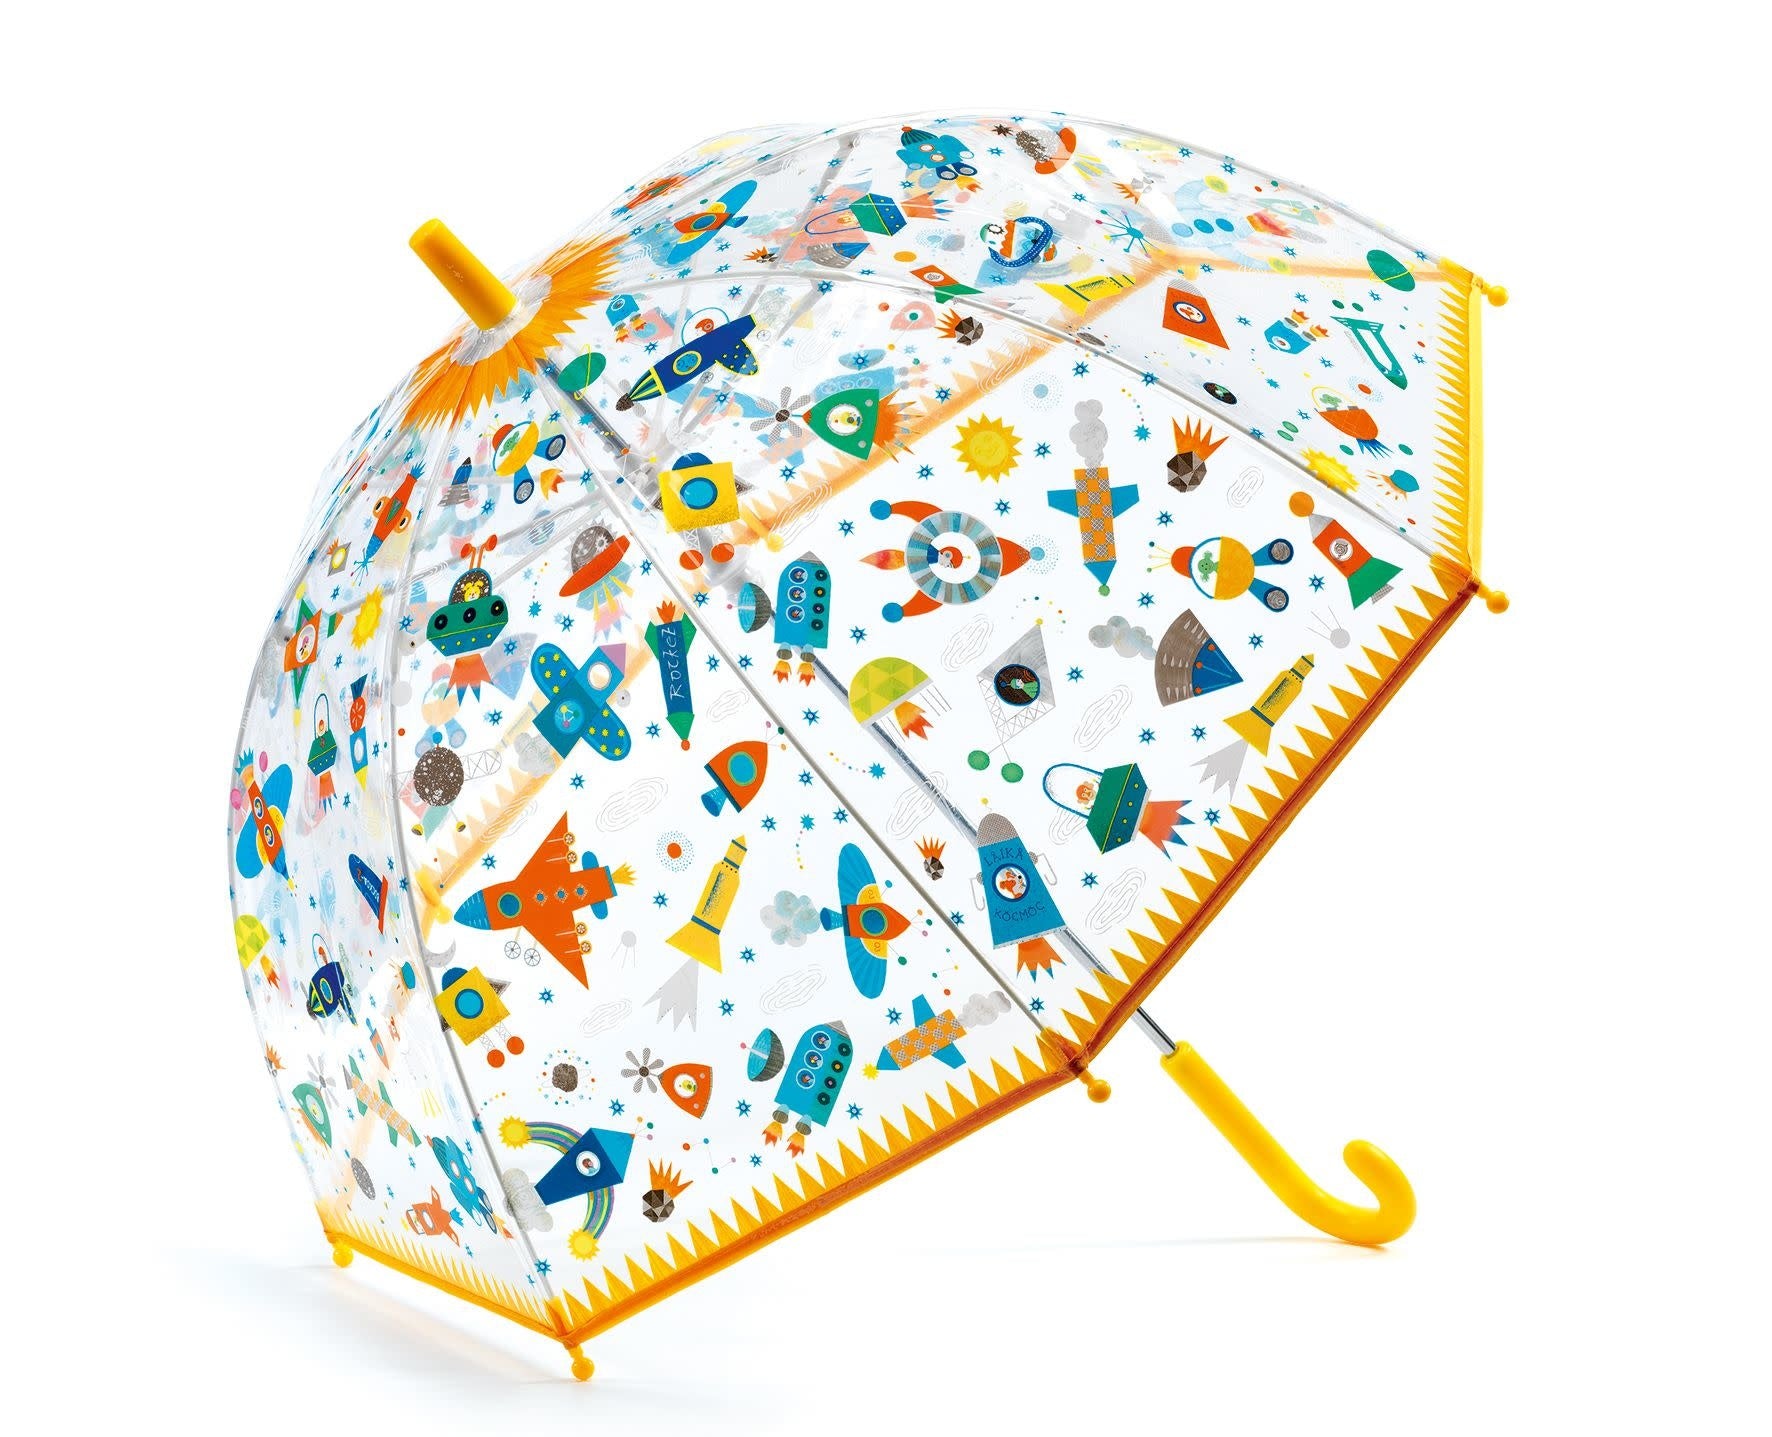 Space Umbrella